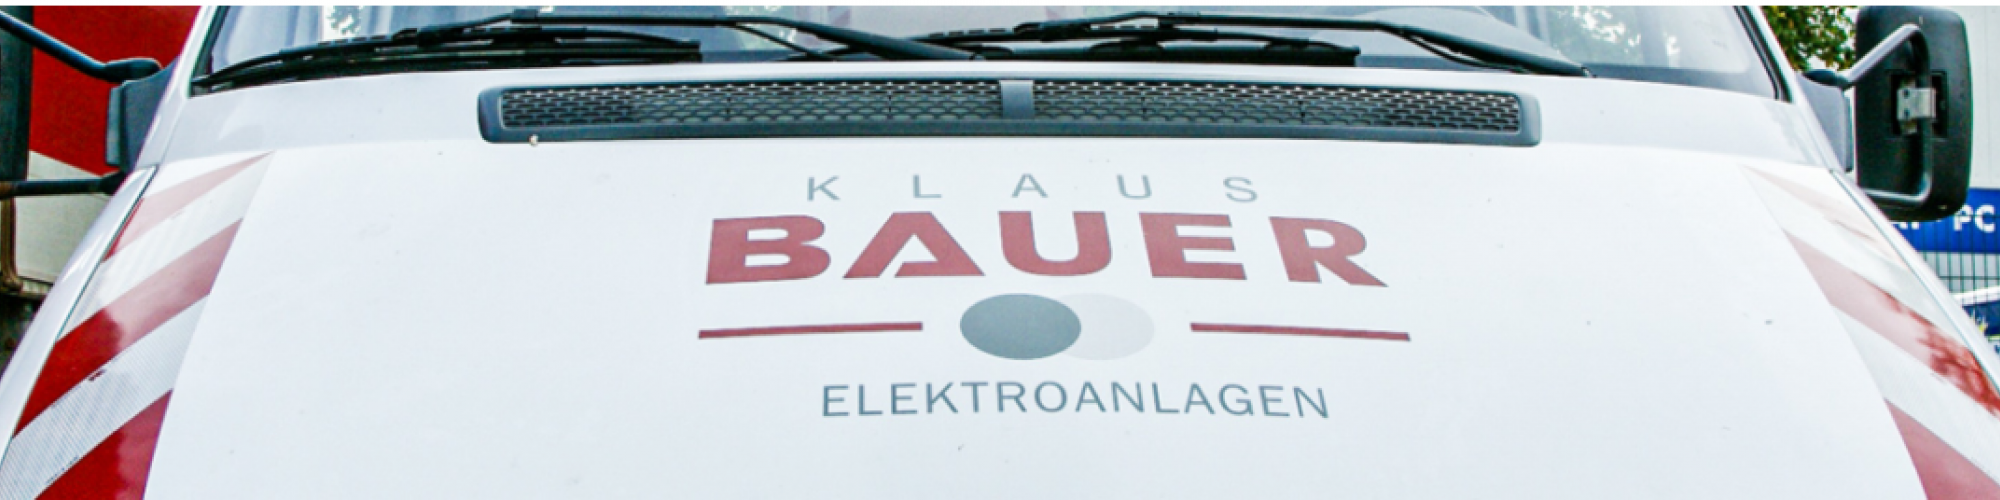 Klaus Bauer Elektroanlagen